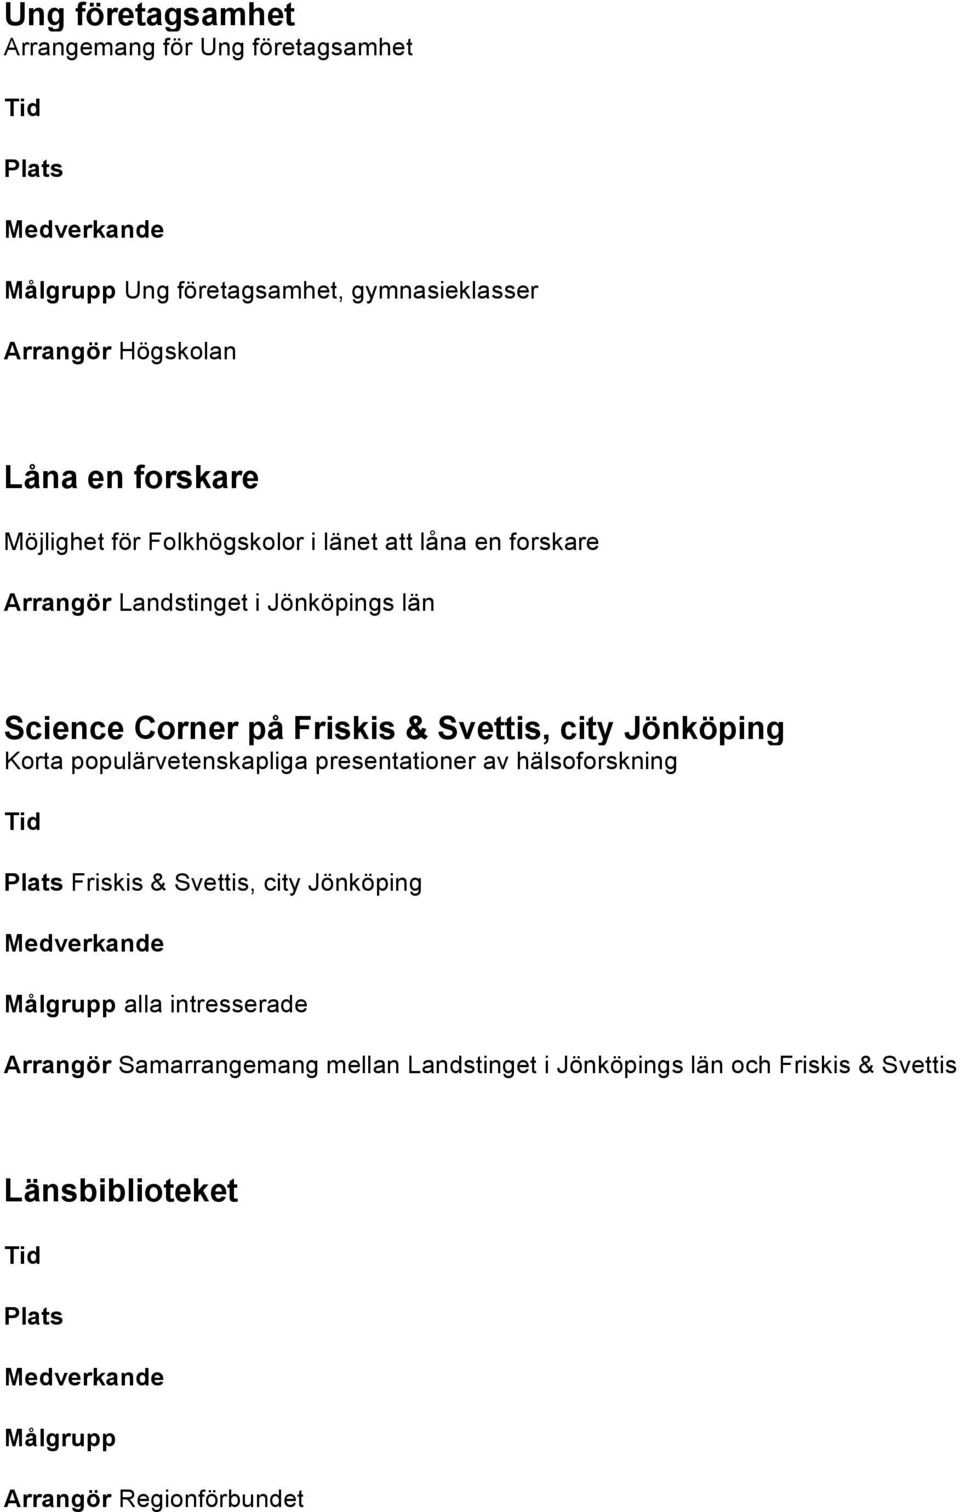 Jönköping Korta populärvetenskapliga presentationer av hälsoforskning Friskis & Svettis, city Jönköping alla